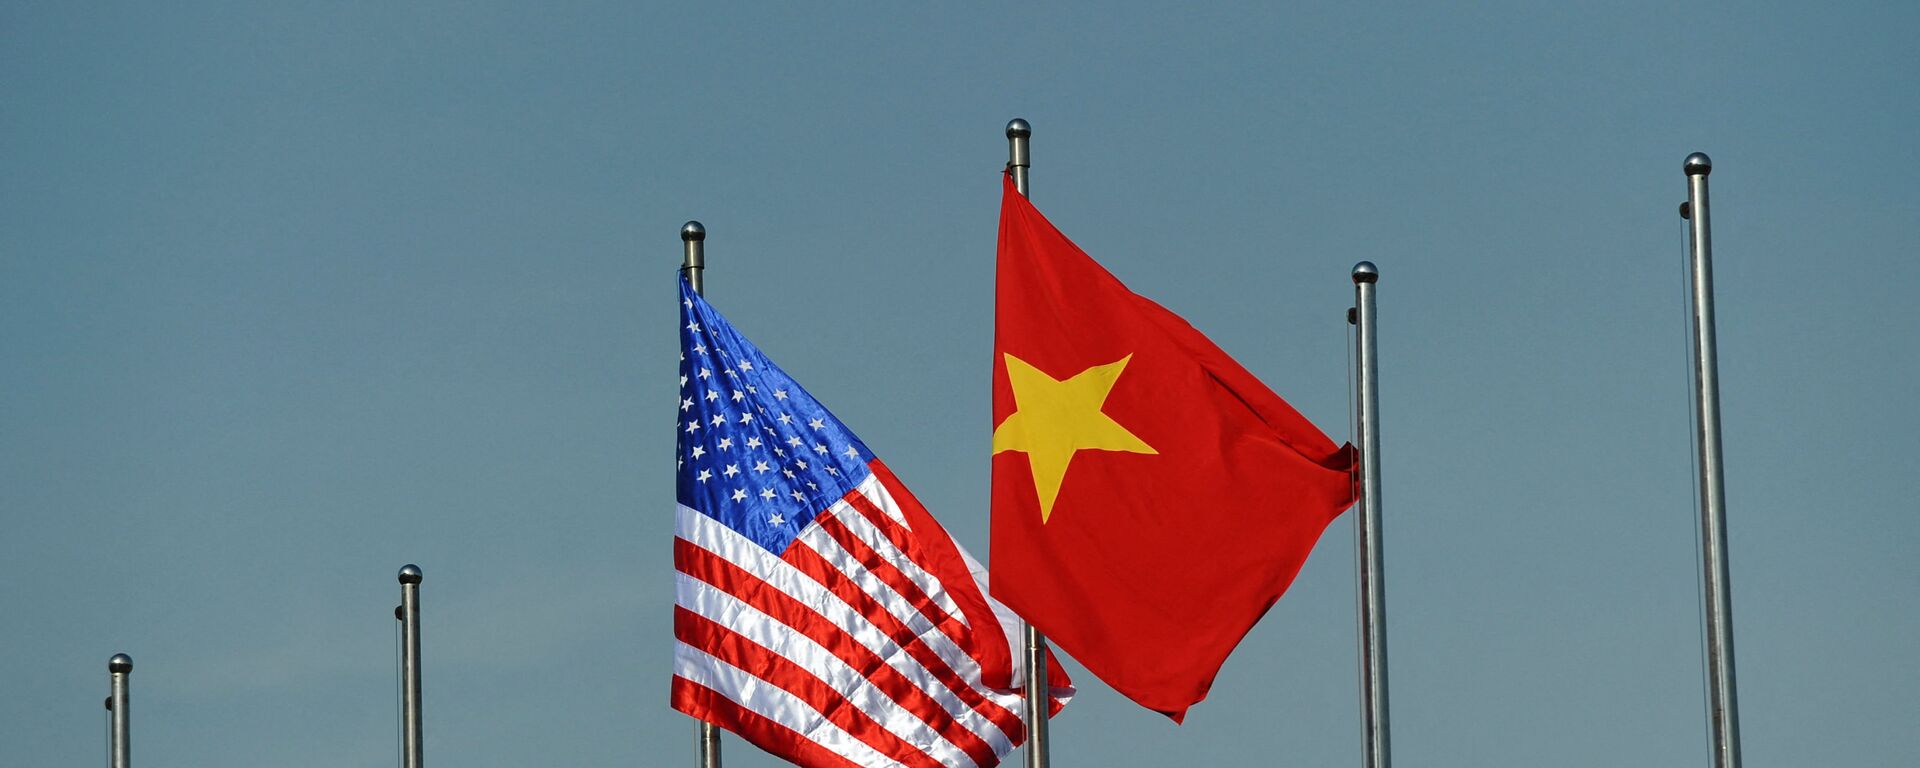 Quốc kỳ của Hoa Kỳ và Việt Nam. - Sputnik Việt Nam, 1920, 12.03.2022